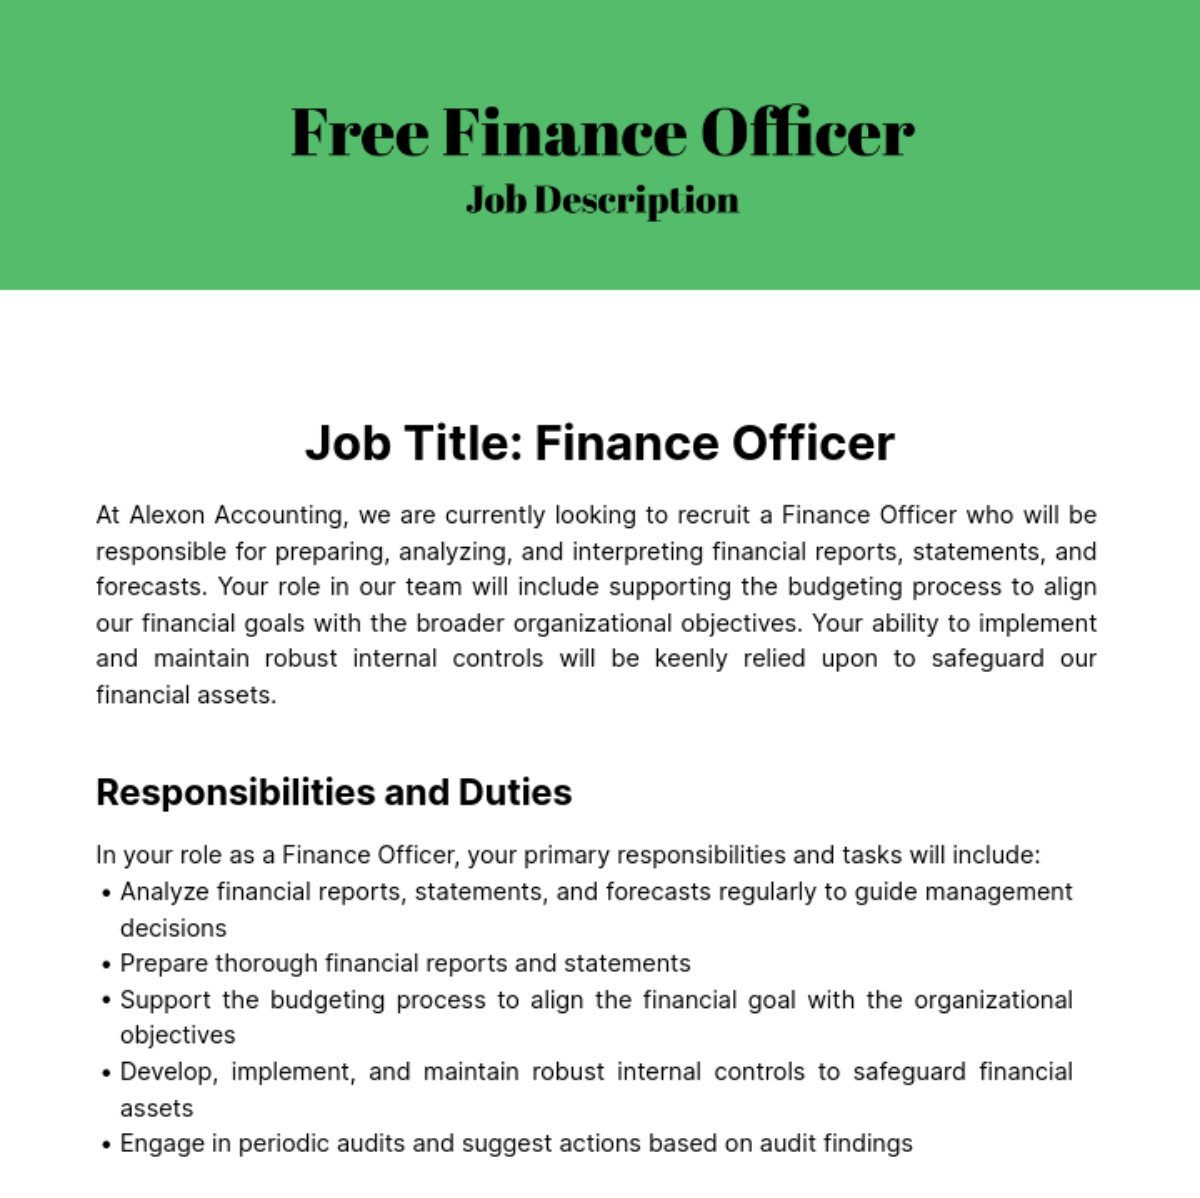 Finance Officer Job Description Template